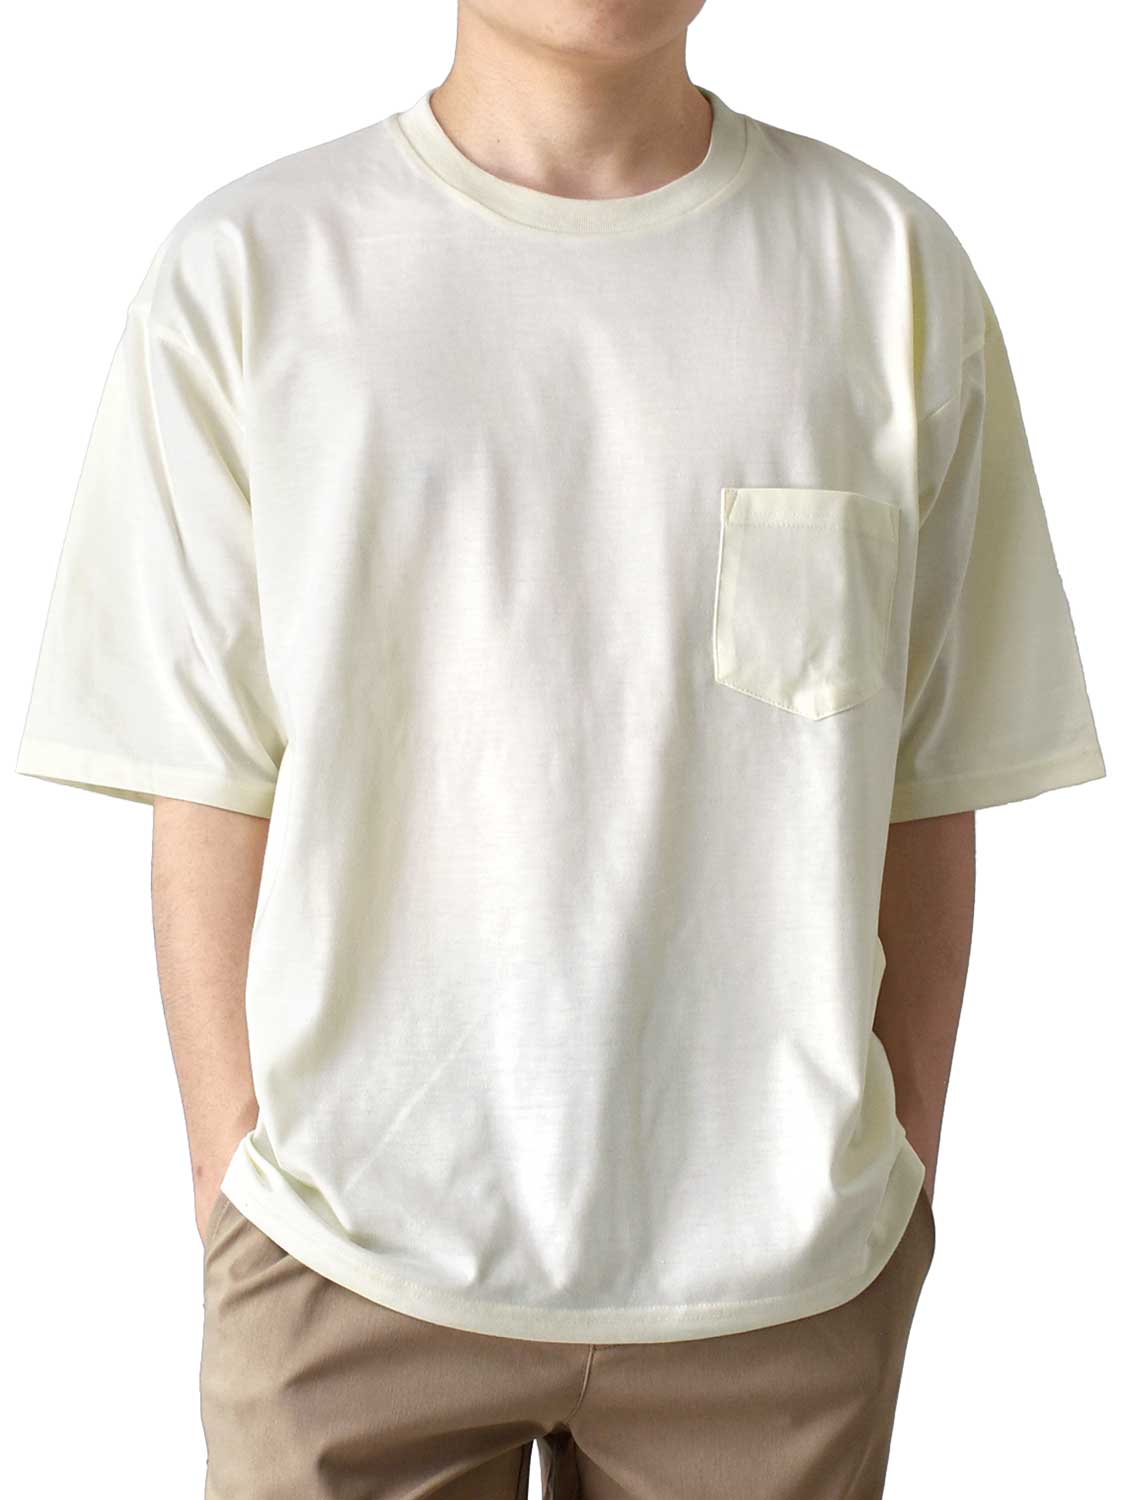 Tシャツ メンズ 半袖 ストレッチ 接触冷感 ワイドシルエット ポケット付き 送料無料 通販Y